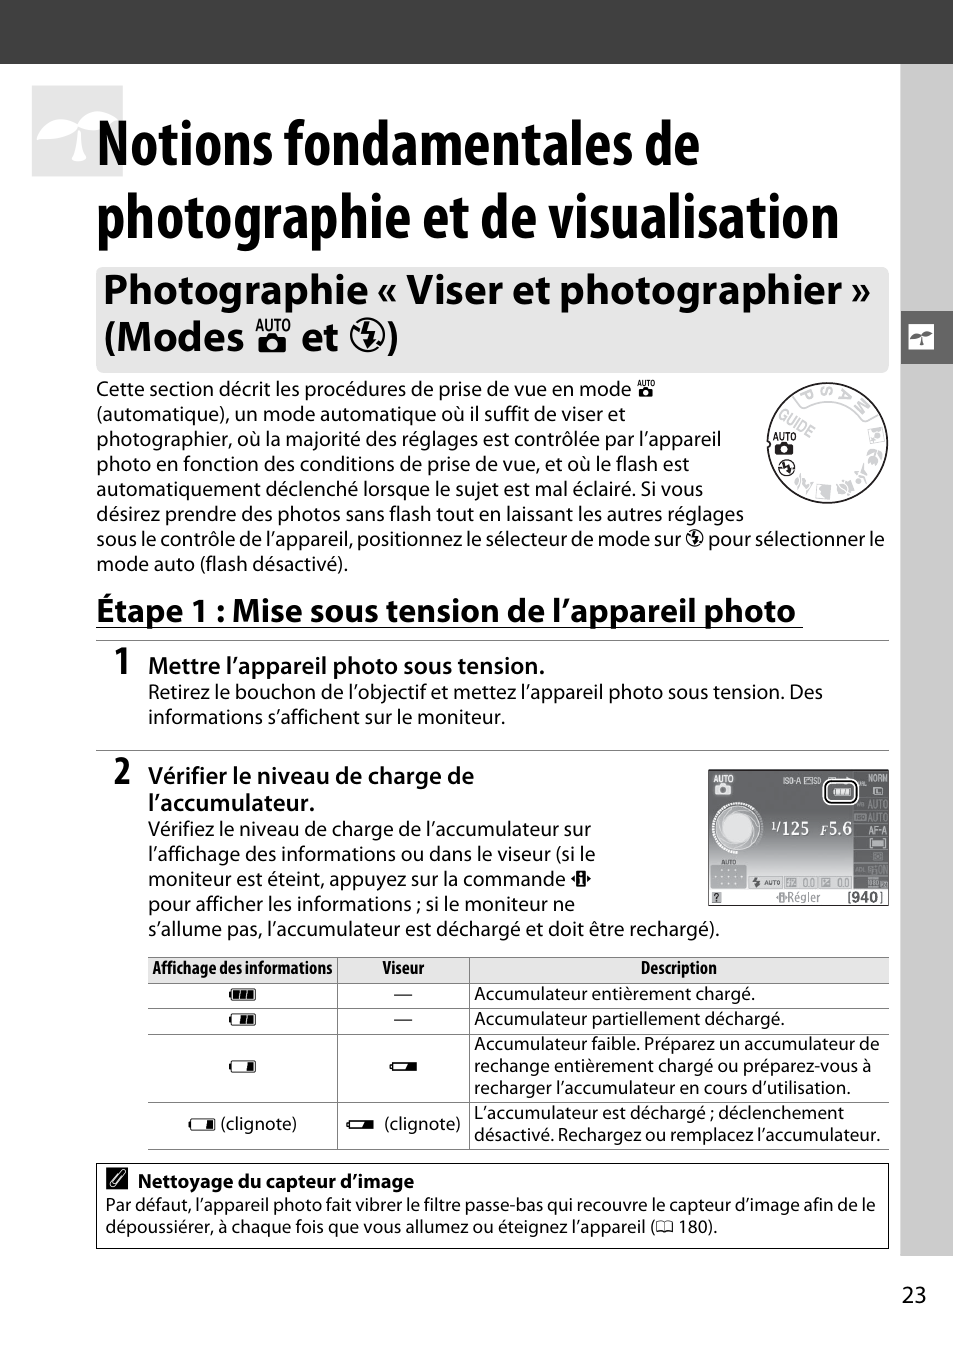 Étape 1 : mise sous tension de l’appareil photo | Nikon D3100 Manuel d'utilisation | Page 39 / 224